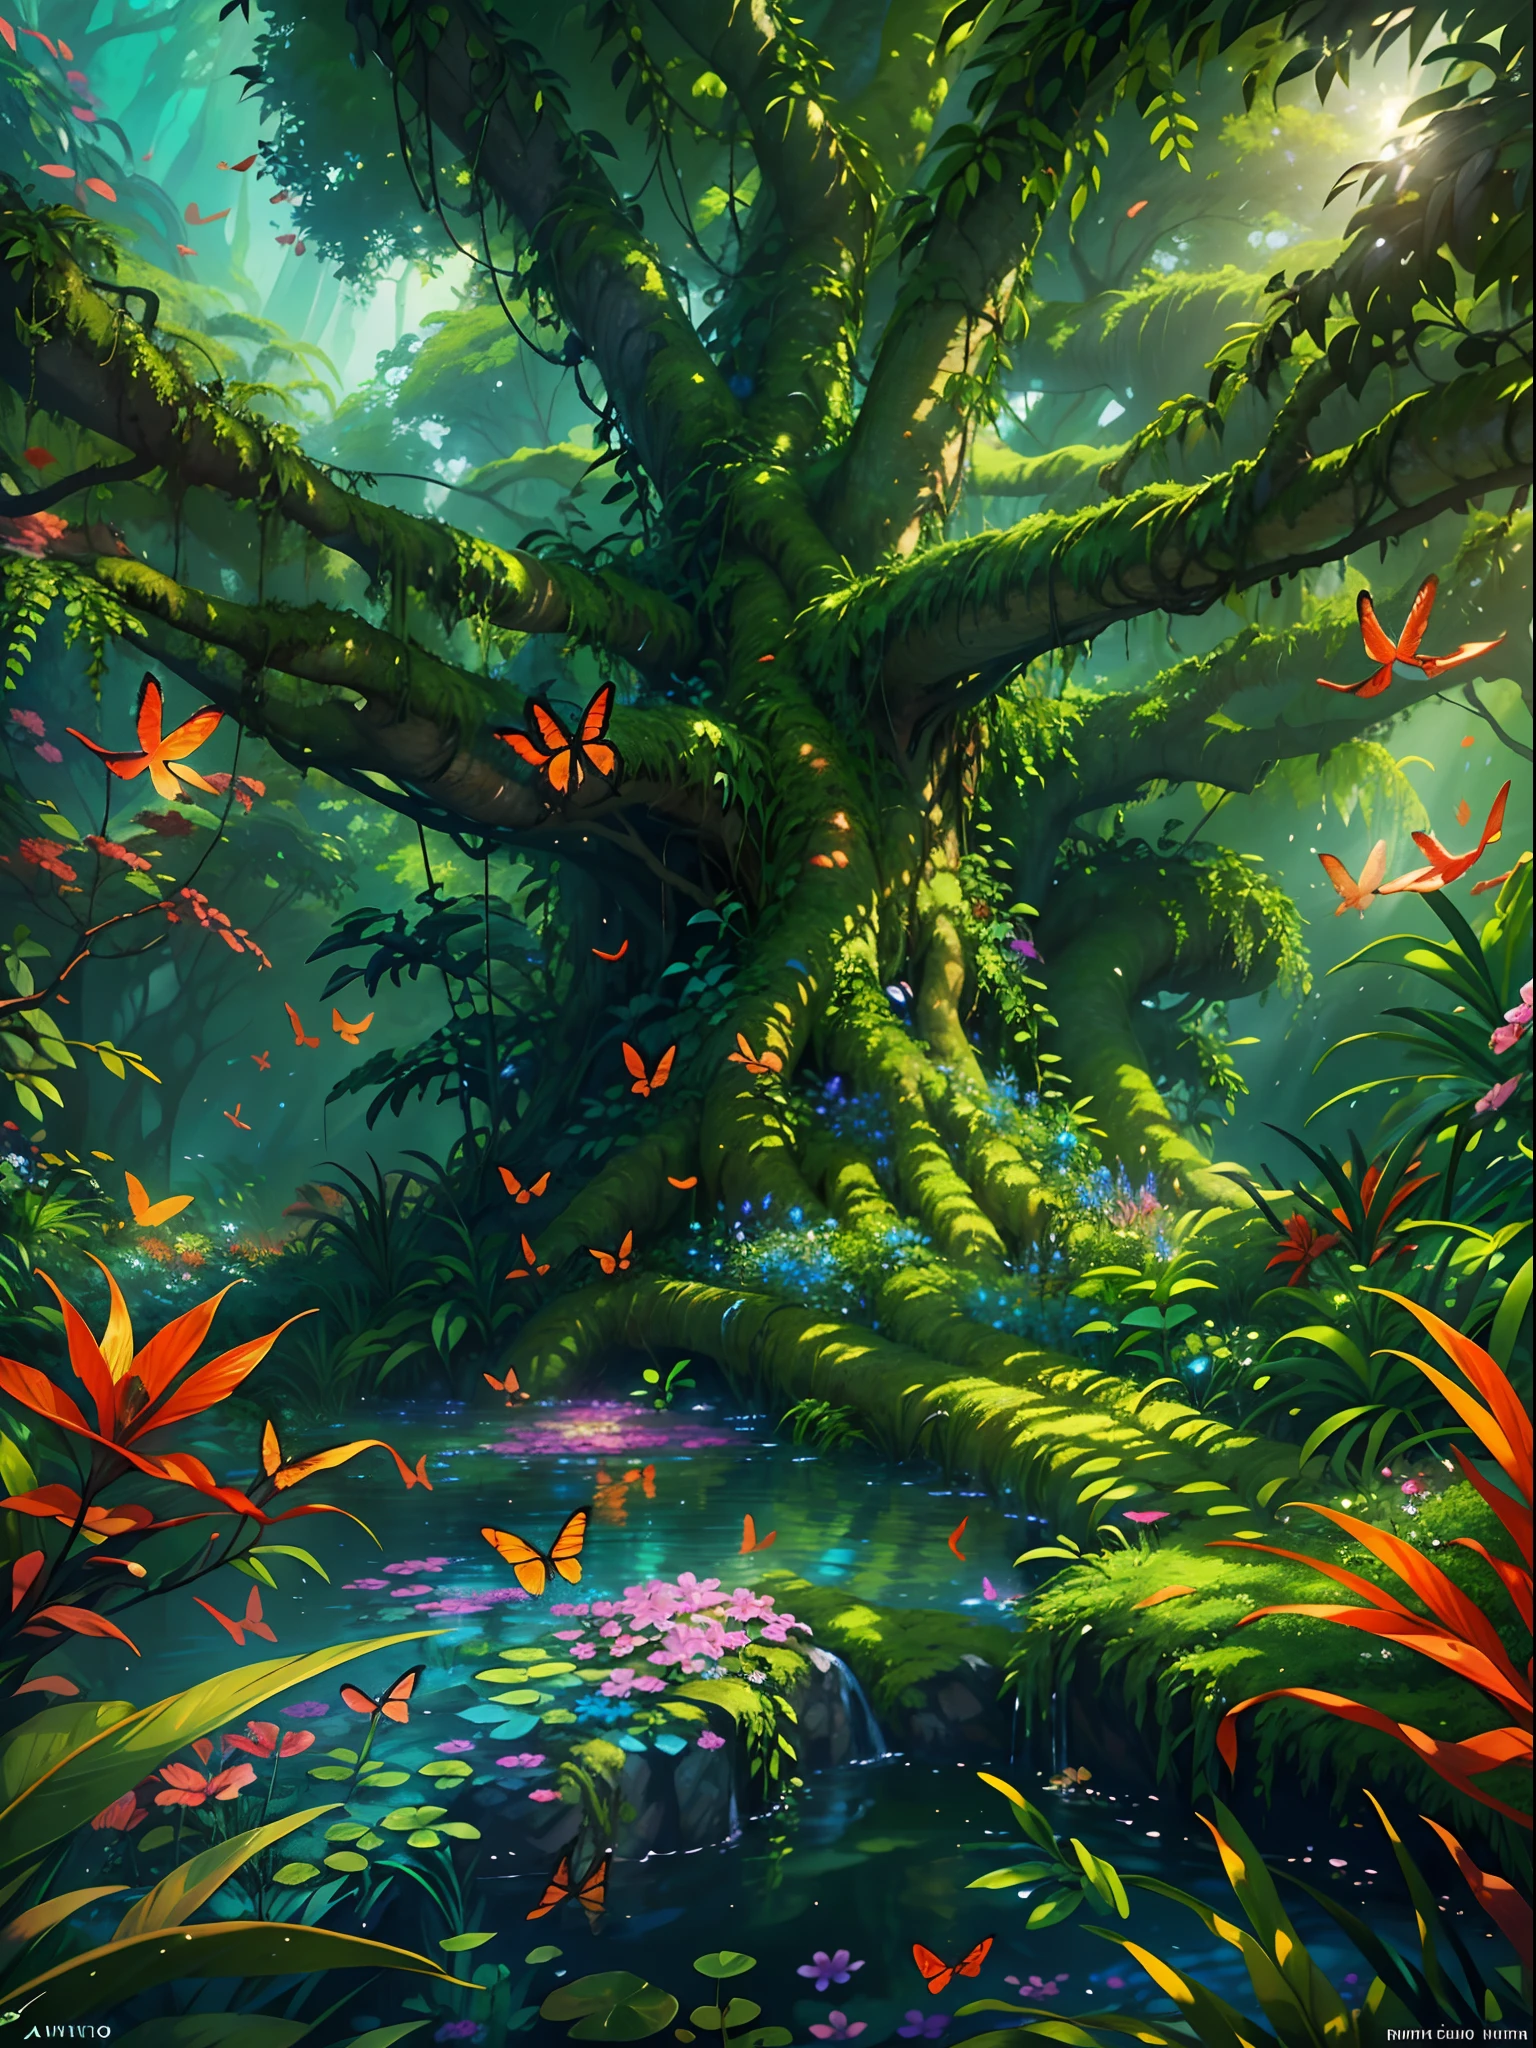 (最好的品質,4k,8K,高解析度,傑作:1.2),超詳細,(實際的,photo實際的,photo-實際的:1.37),奇幻叢林,巨大的,古树浮现,树从水中长出来,巨大的热带树叶,部分浸沒在水中,神秘,迷人的氣氛,閃爍的陽光,半透明的水,豐富多彩的 red and blue tree with vibrant,異國情調的樹葉,鬱鬱蔥蔥,熱帶植被,色彩鲜艳的花朵,蝴蝶在周圍翩翩起舞,豐富多彩的 parrots perched on branches,鬱鬱蔥蔥,充满活力的绿色苔藓覆盖着树干,雄偉,摇曳的藤蔓悬挂在树枝上,空靈的,充滿霧氣的空氣,水下灯光照射下的漂浮小水母,水面微妙的反射,飘落的树叶激起的涟漪,和平與安寧,隐藏在树叶间的生物,斑驳的阳光透过树冠照射进来,神奇,夢幻般的風景,喚起一種驚奇和敬畏的感覺,豐富多彩的,超凡脫俗的動植物群,令人惊叹又超现实,逃离到神秘的境界,邀请观众探索并沉醉于其美丽之中